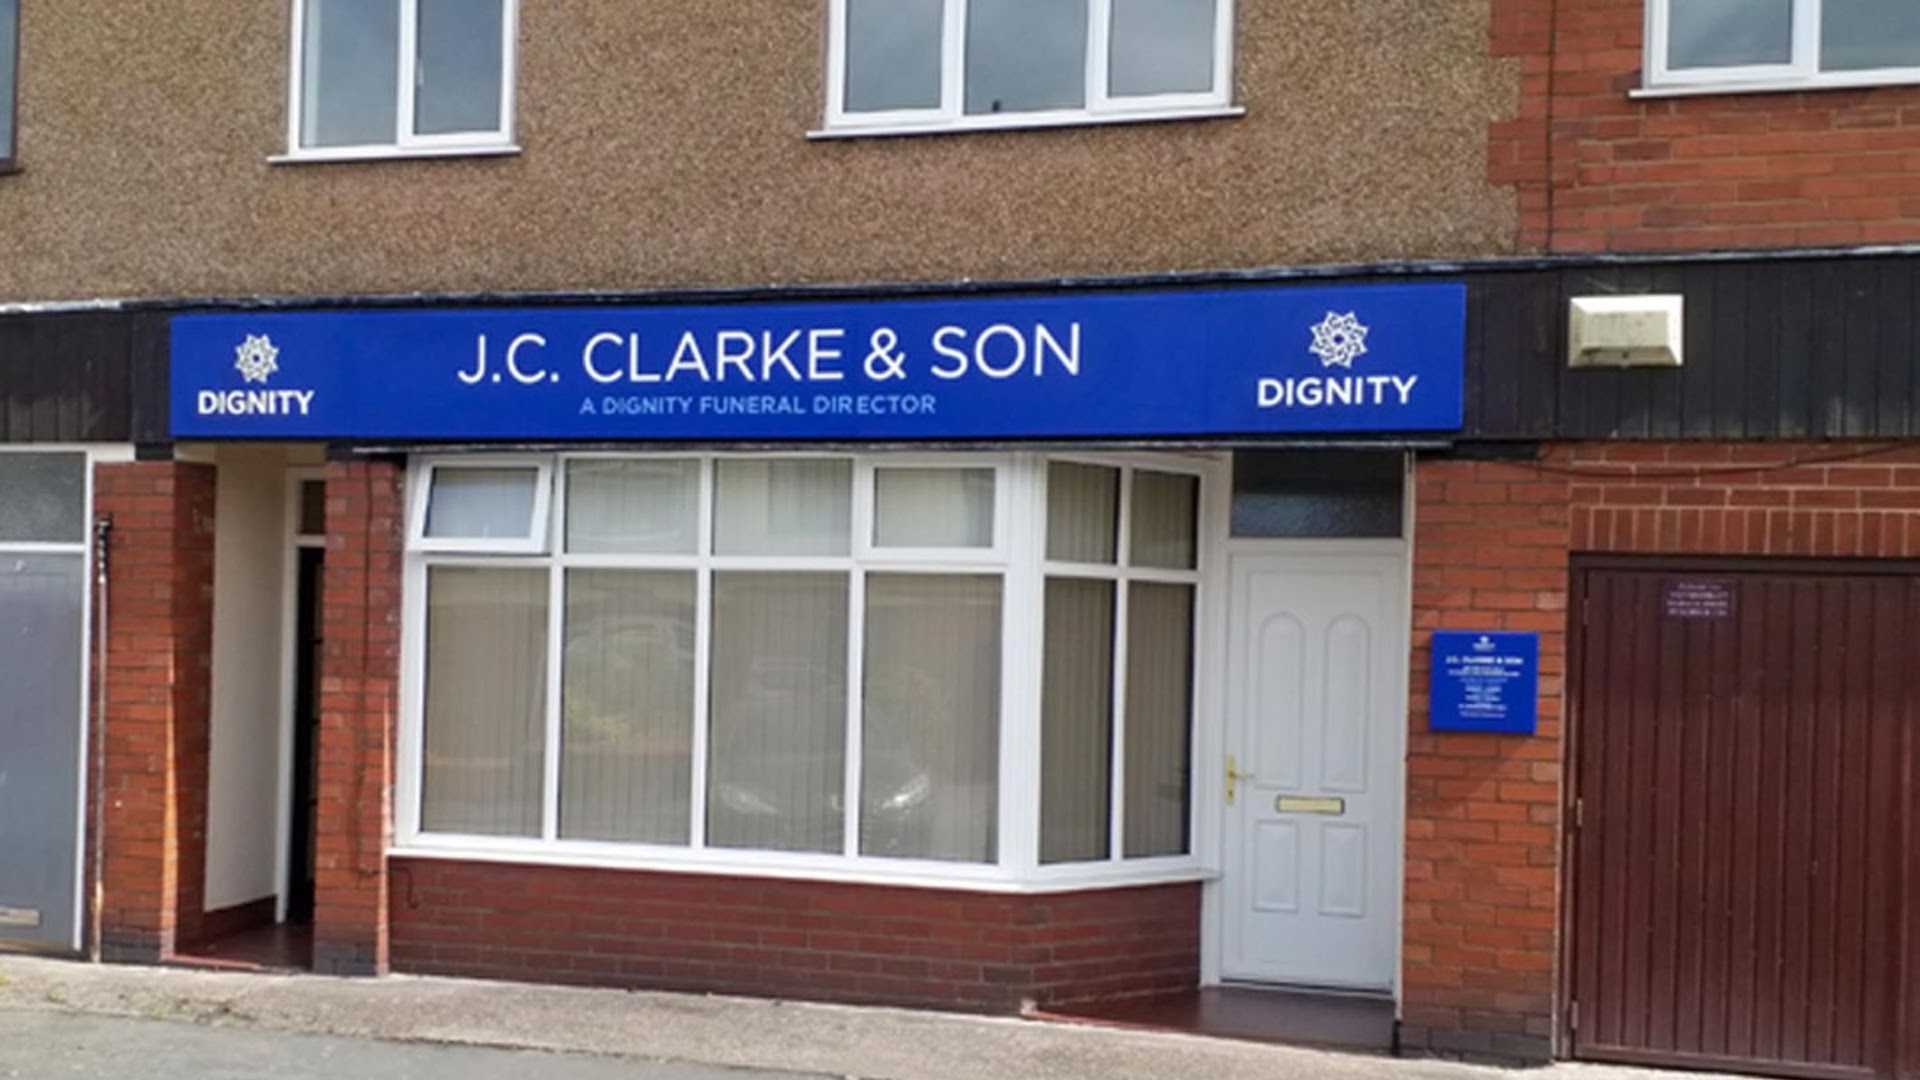 J. C. Clarke & Son Funeral Directors